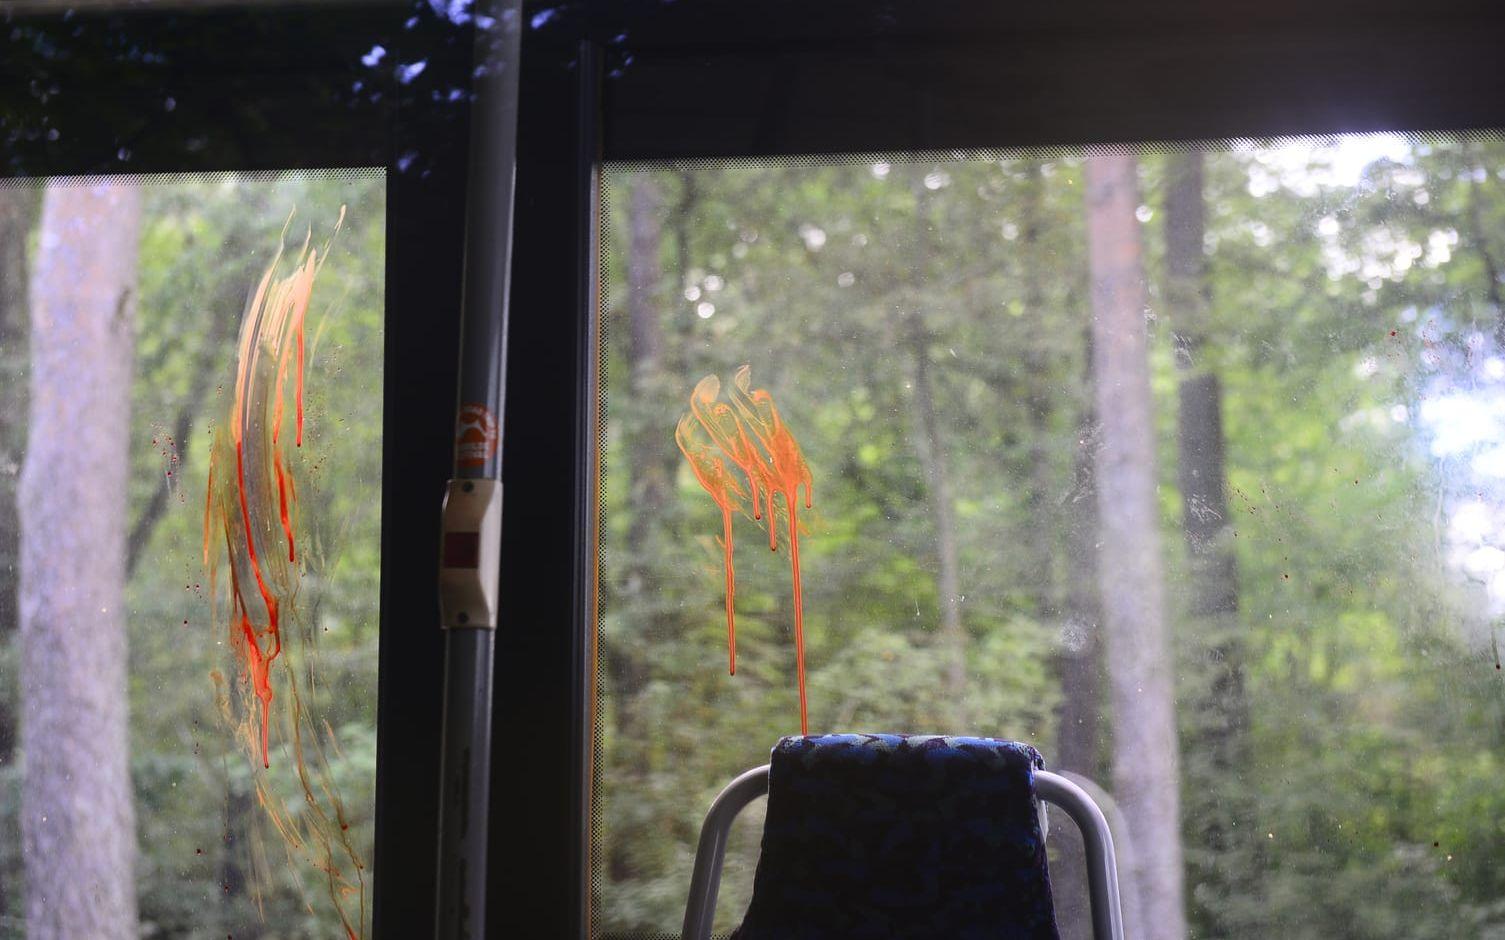 Bussens fönster är nedkladdade med färg som kan misstas för blod. Det ska nu tvättas bort. Bild: Tobias Kjellberg